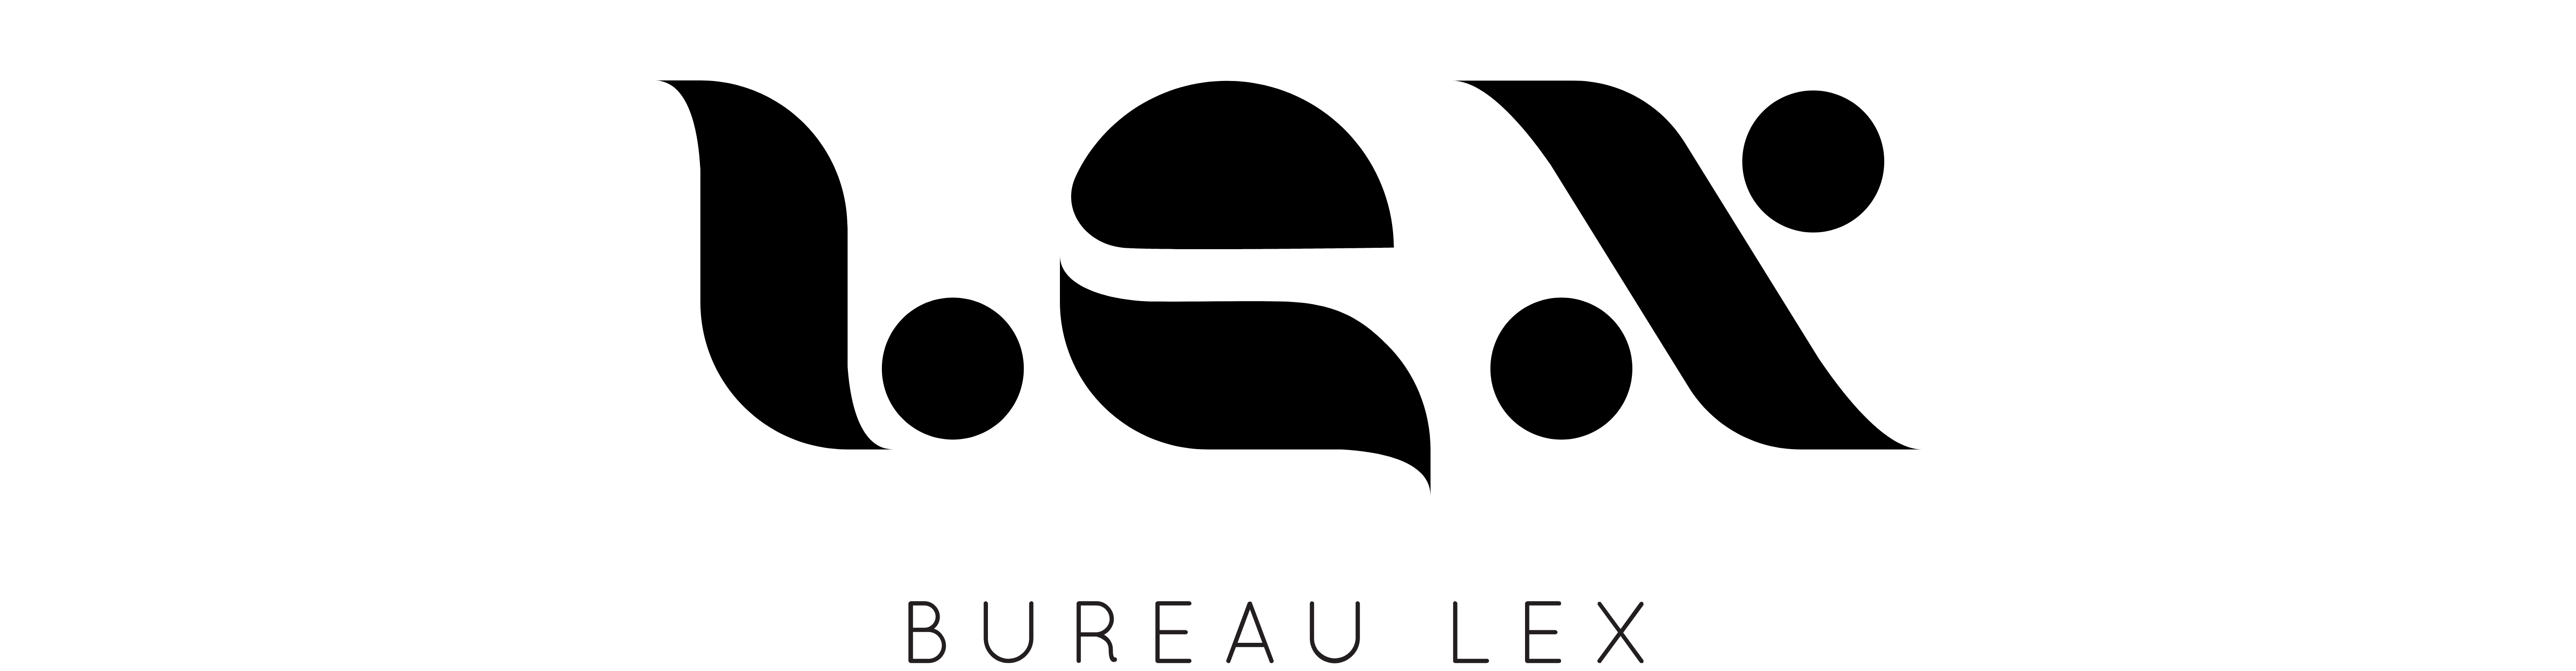 Bureau LEX